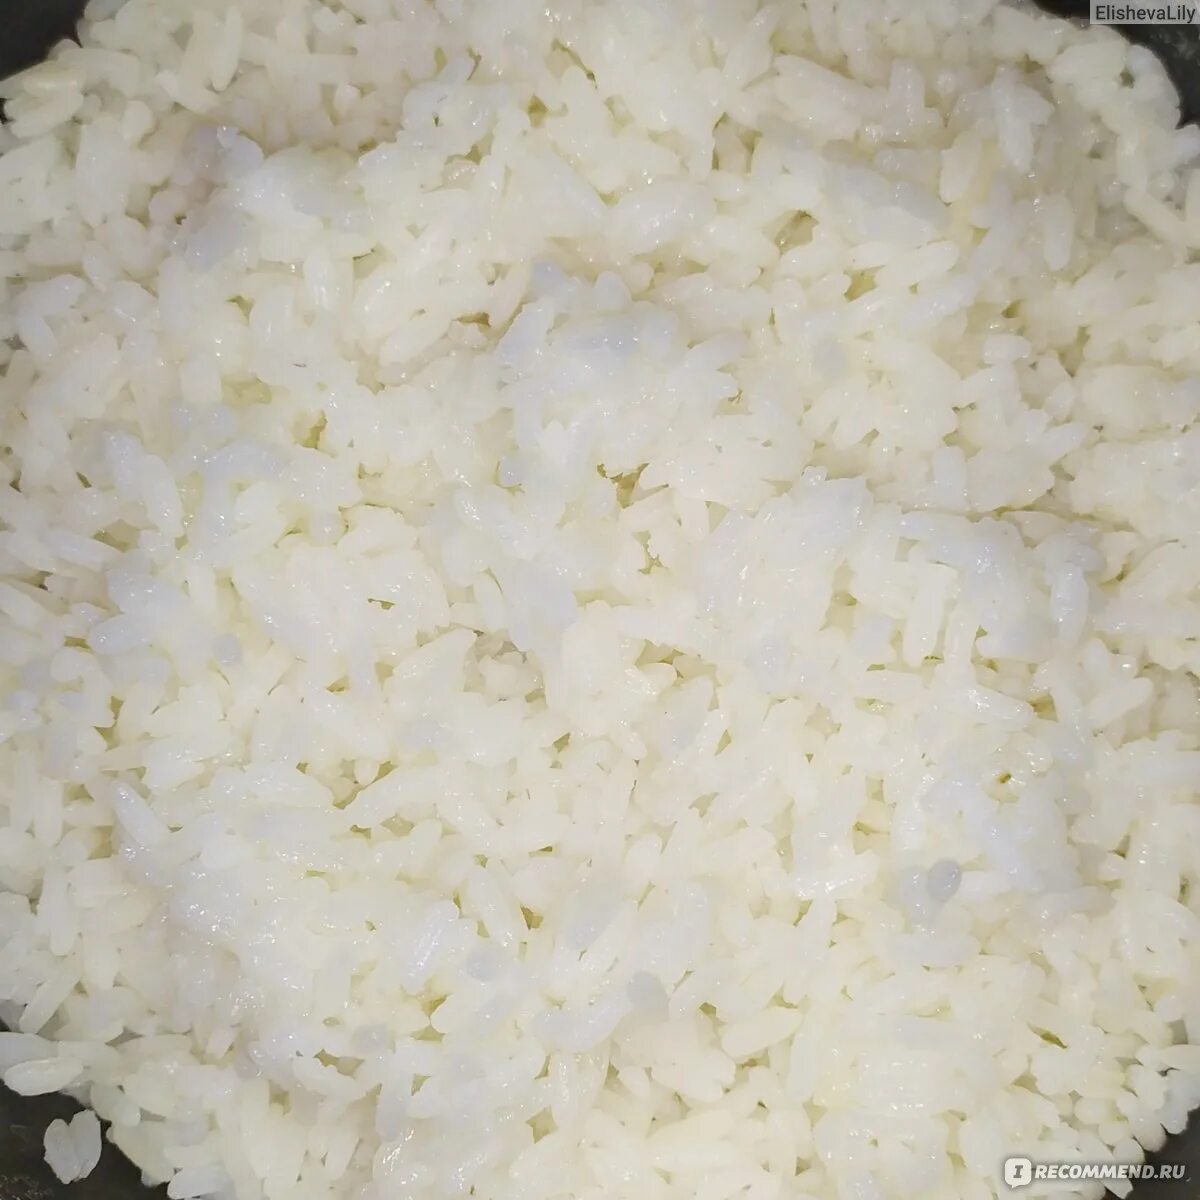 Пропаренный рис готовый. Как сделать пропаренный рис. Пропаренный рис в готовом виде. Рис каждый день черви.